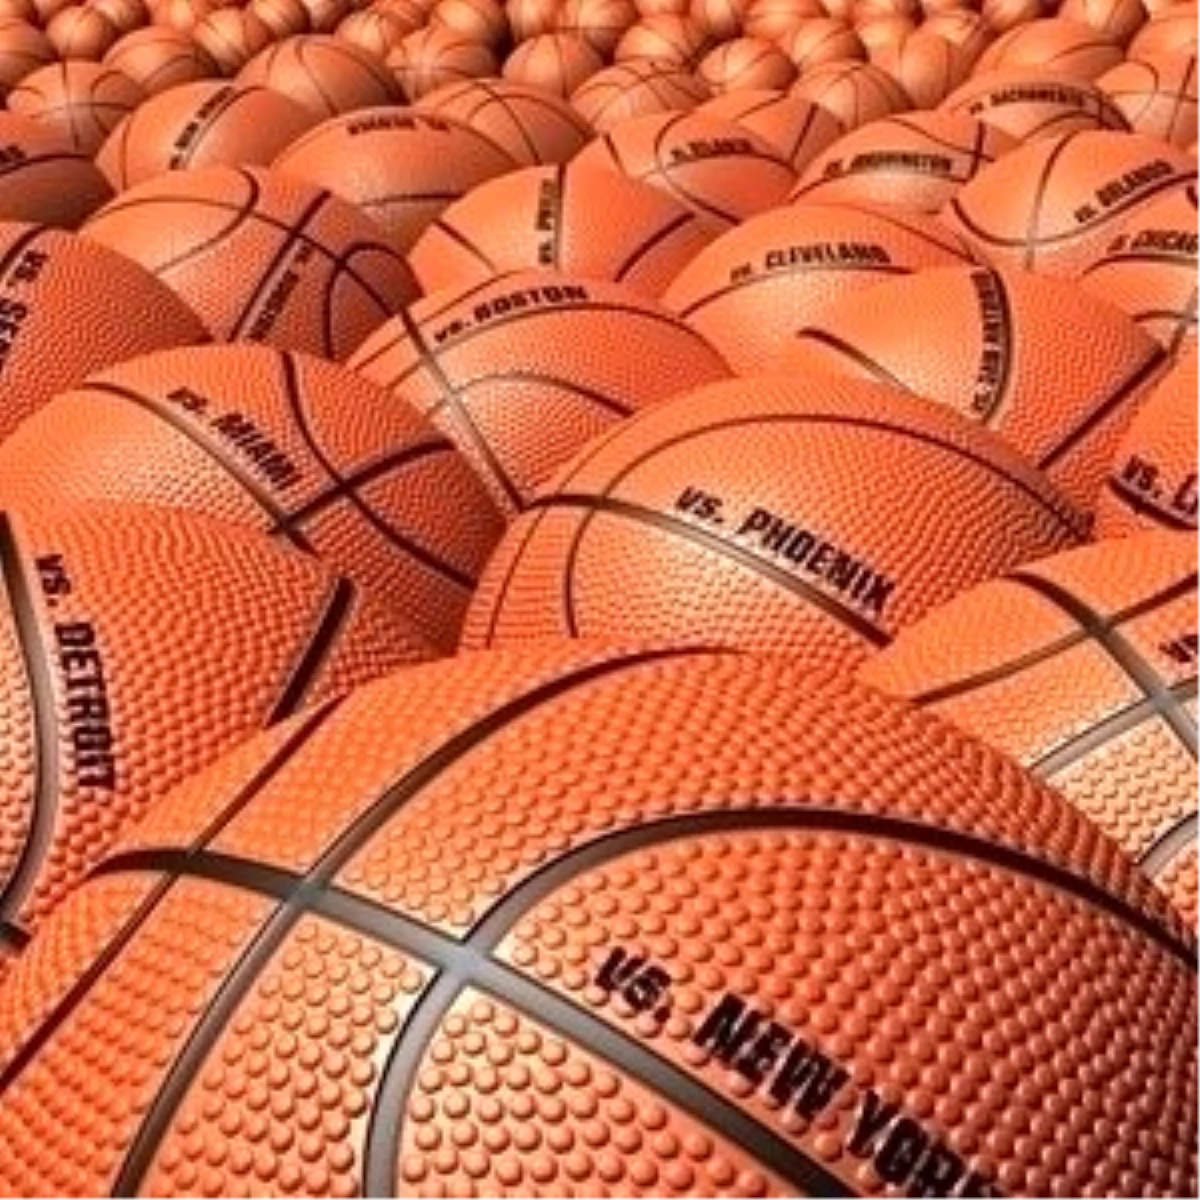 Malatya Basketbol Ligi